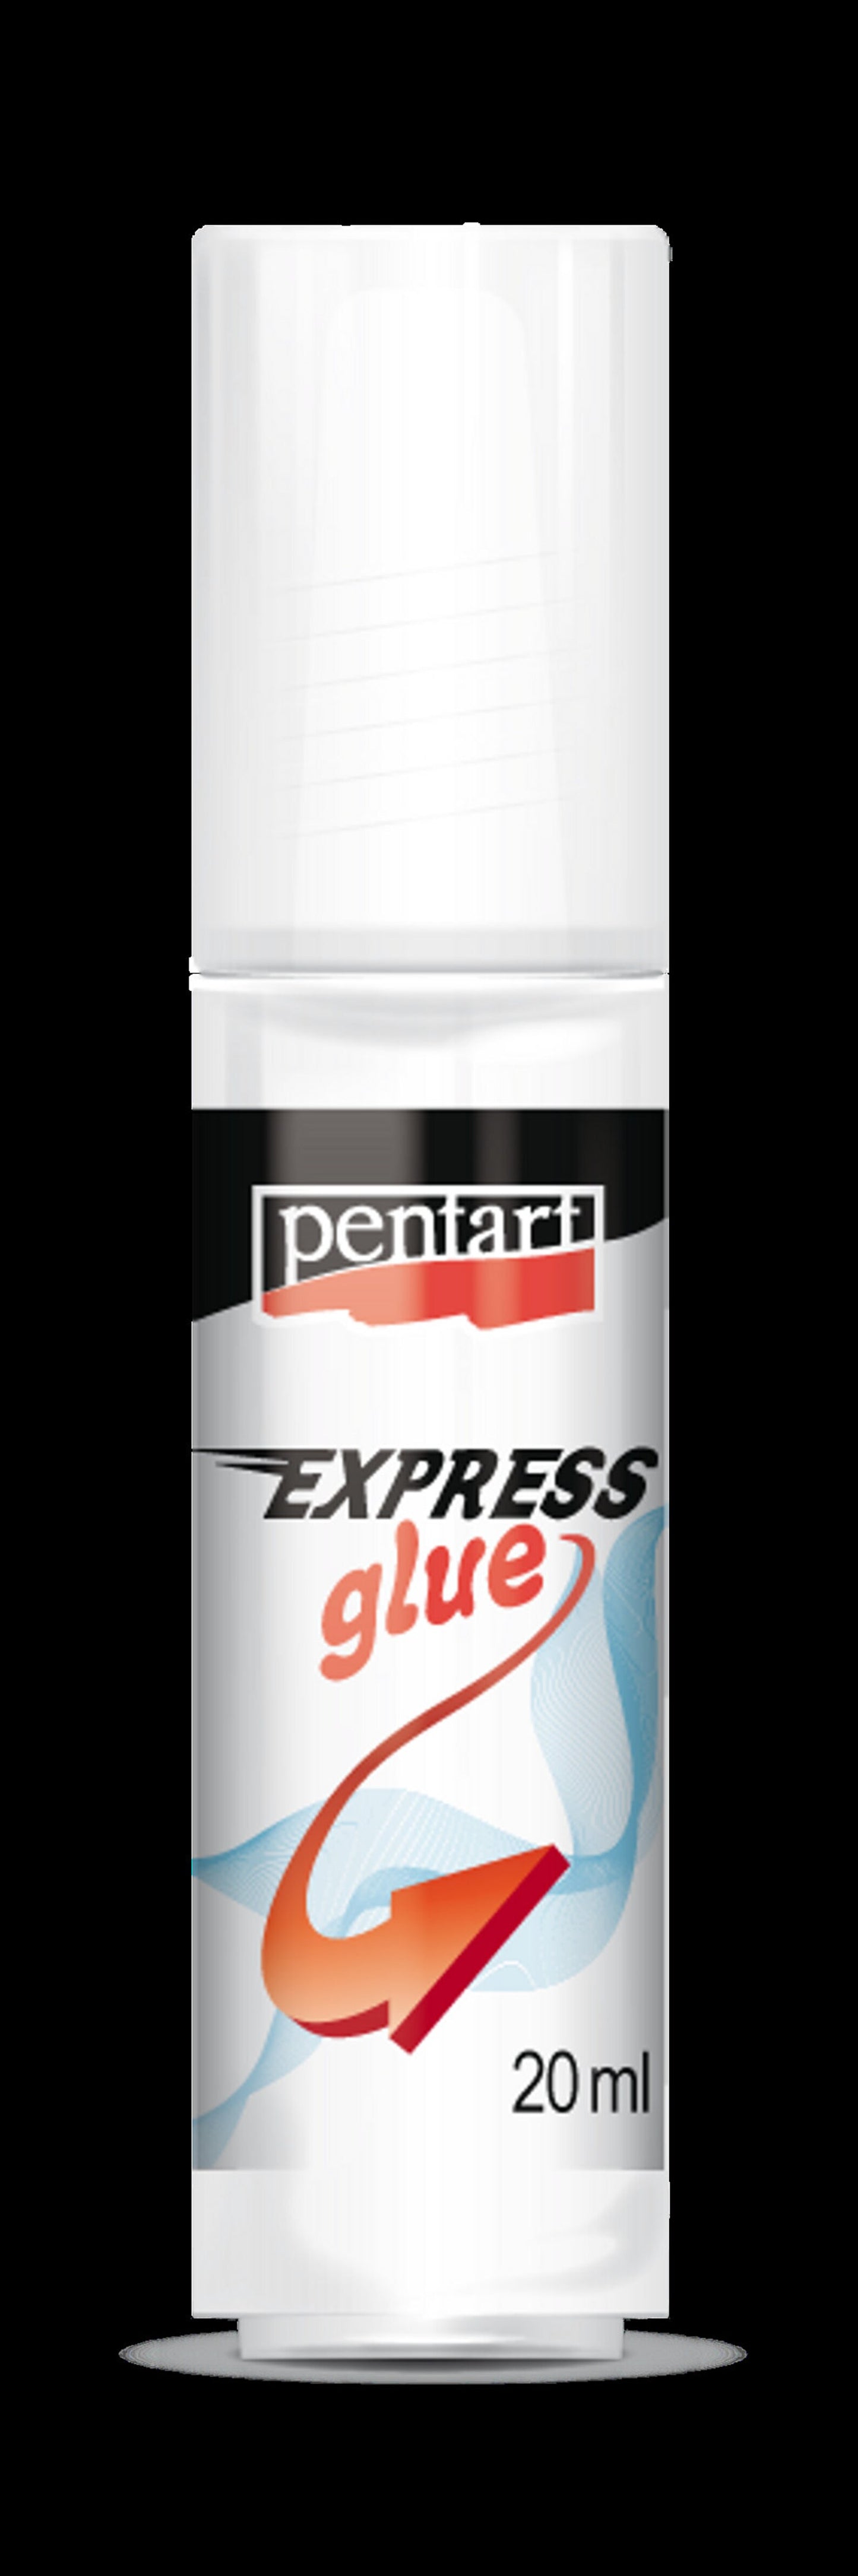 Pentart Express glue